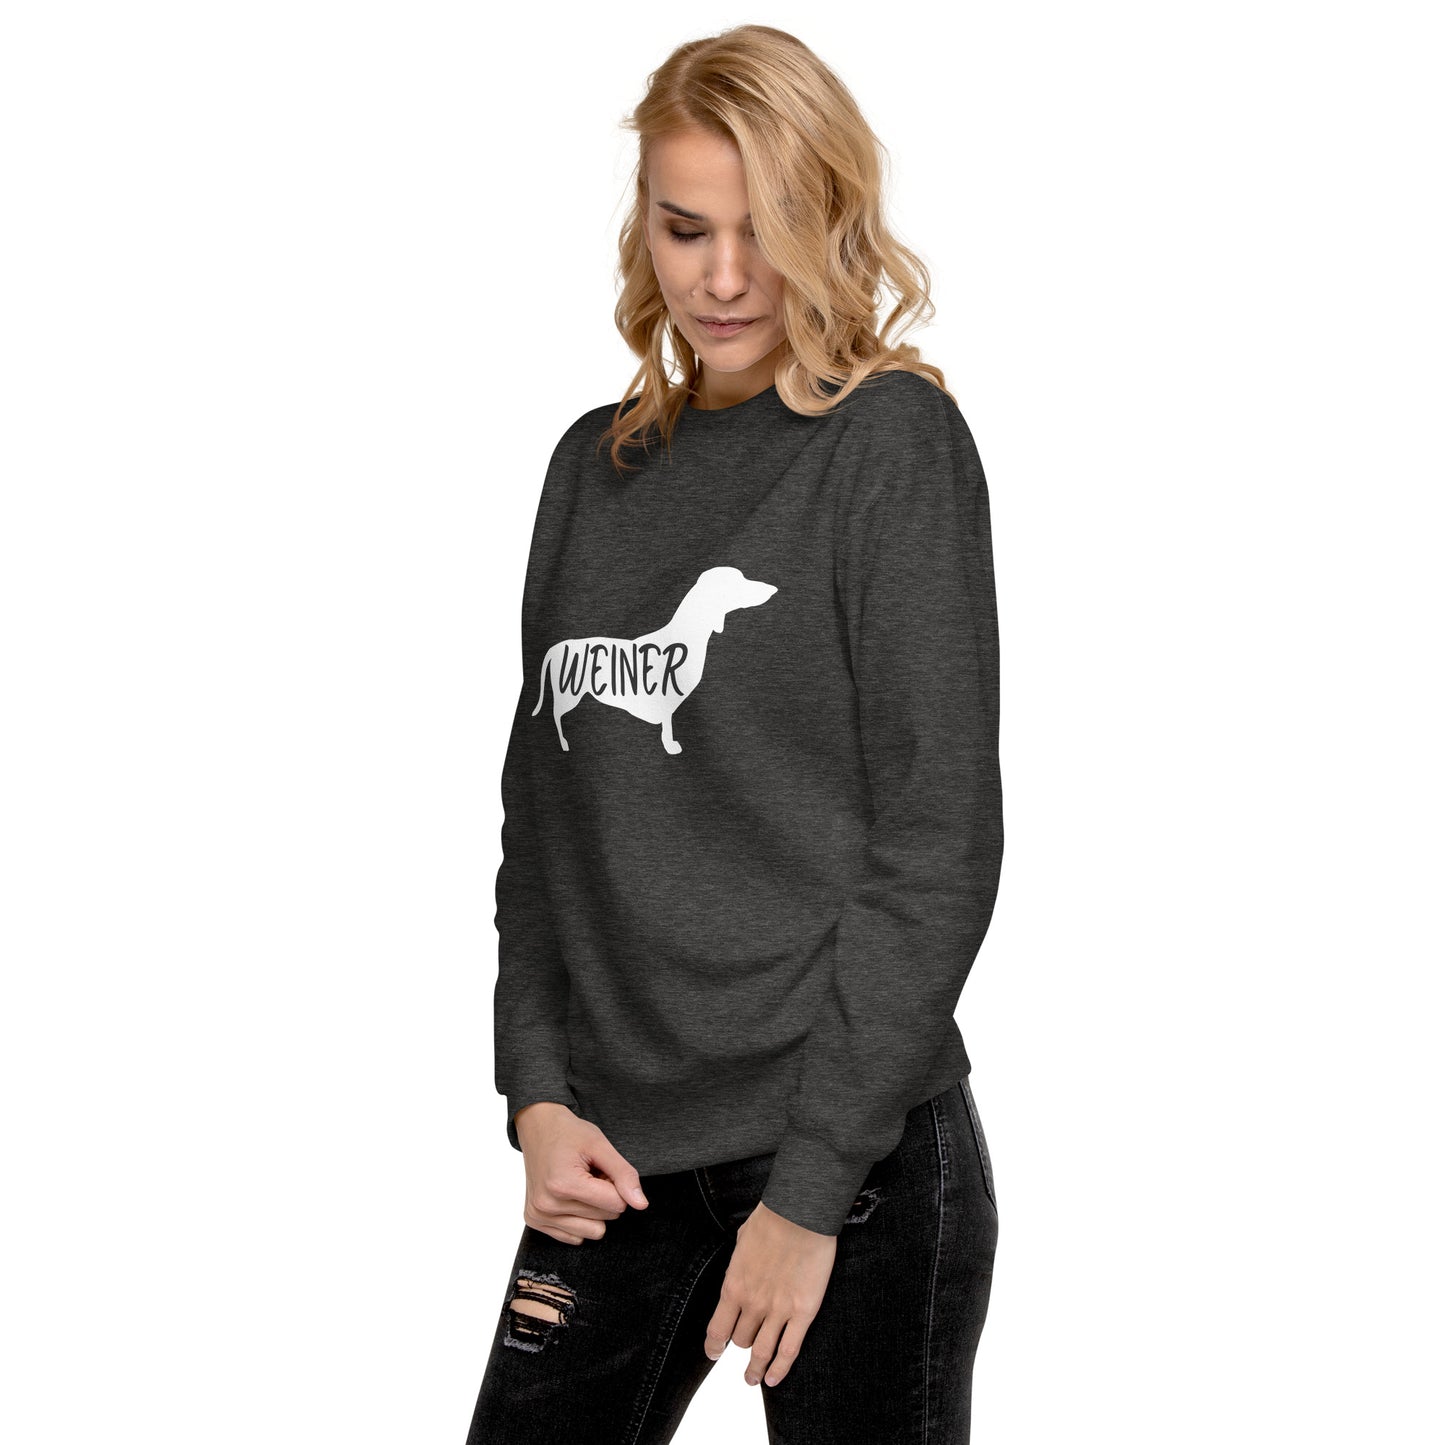 Weiner Dog Womens Sweatshirt